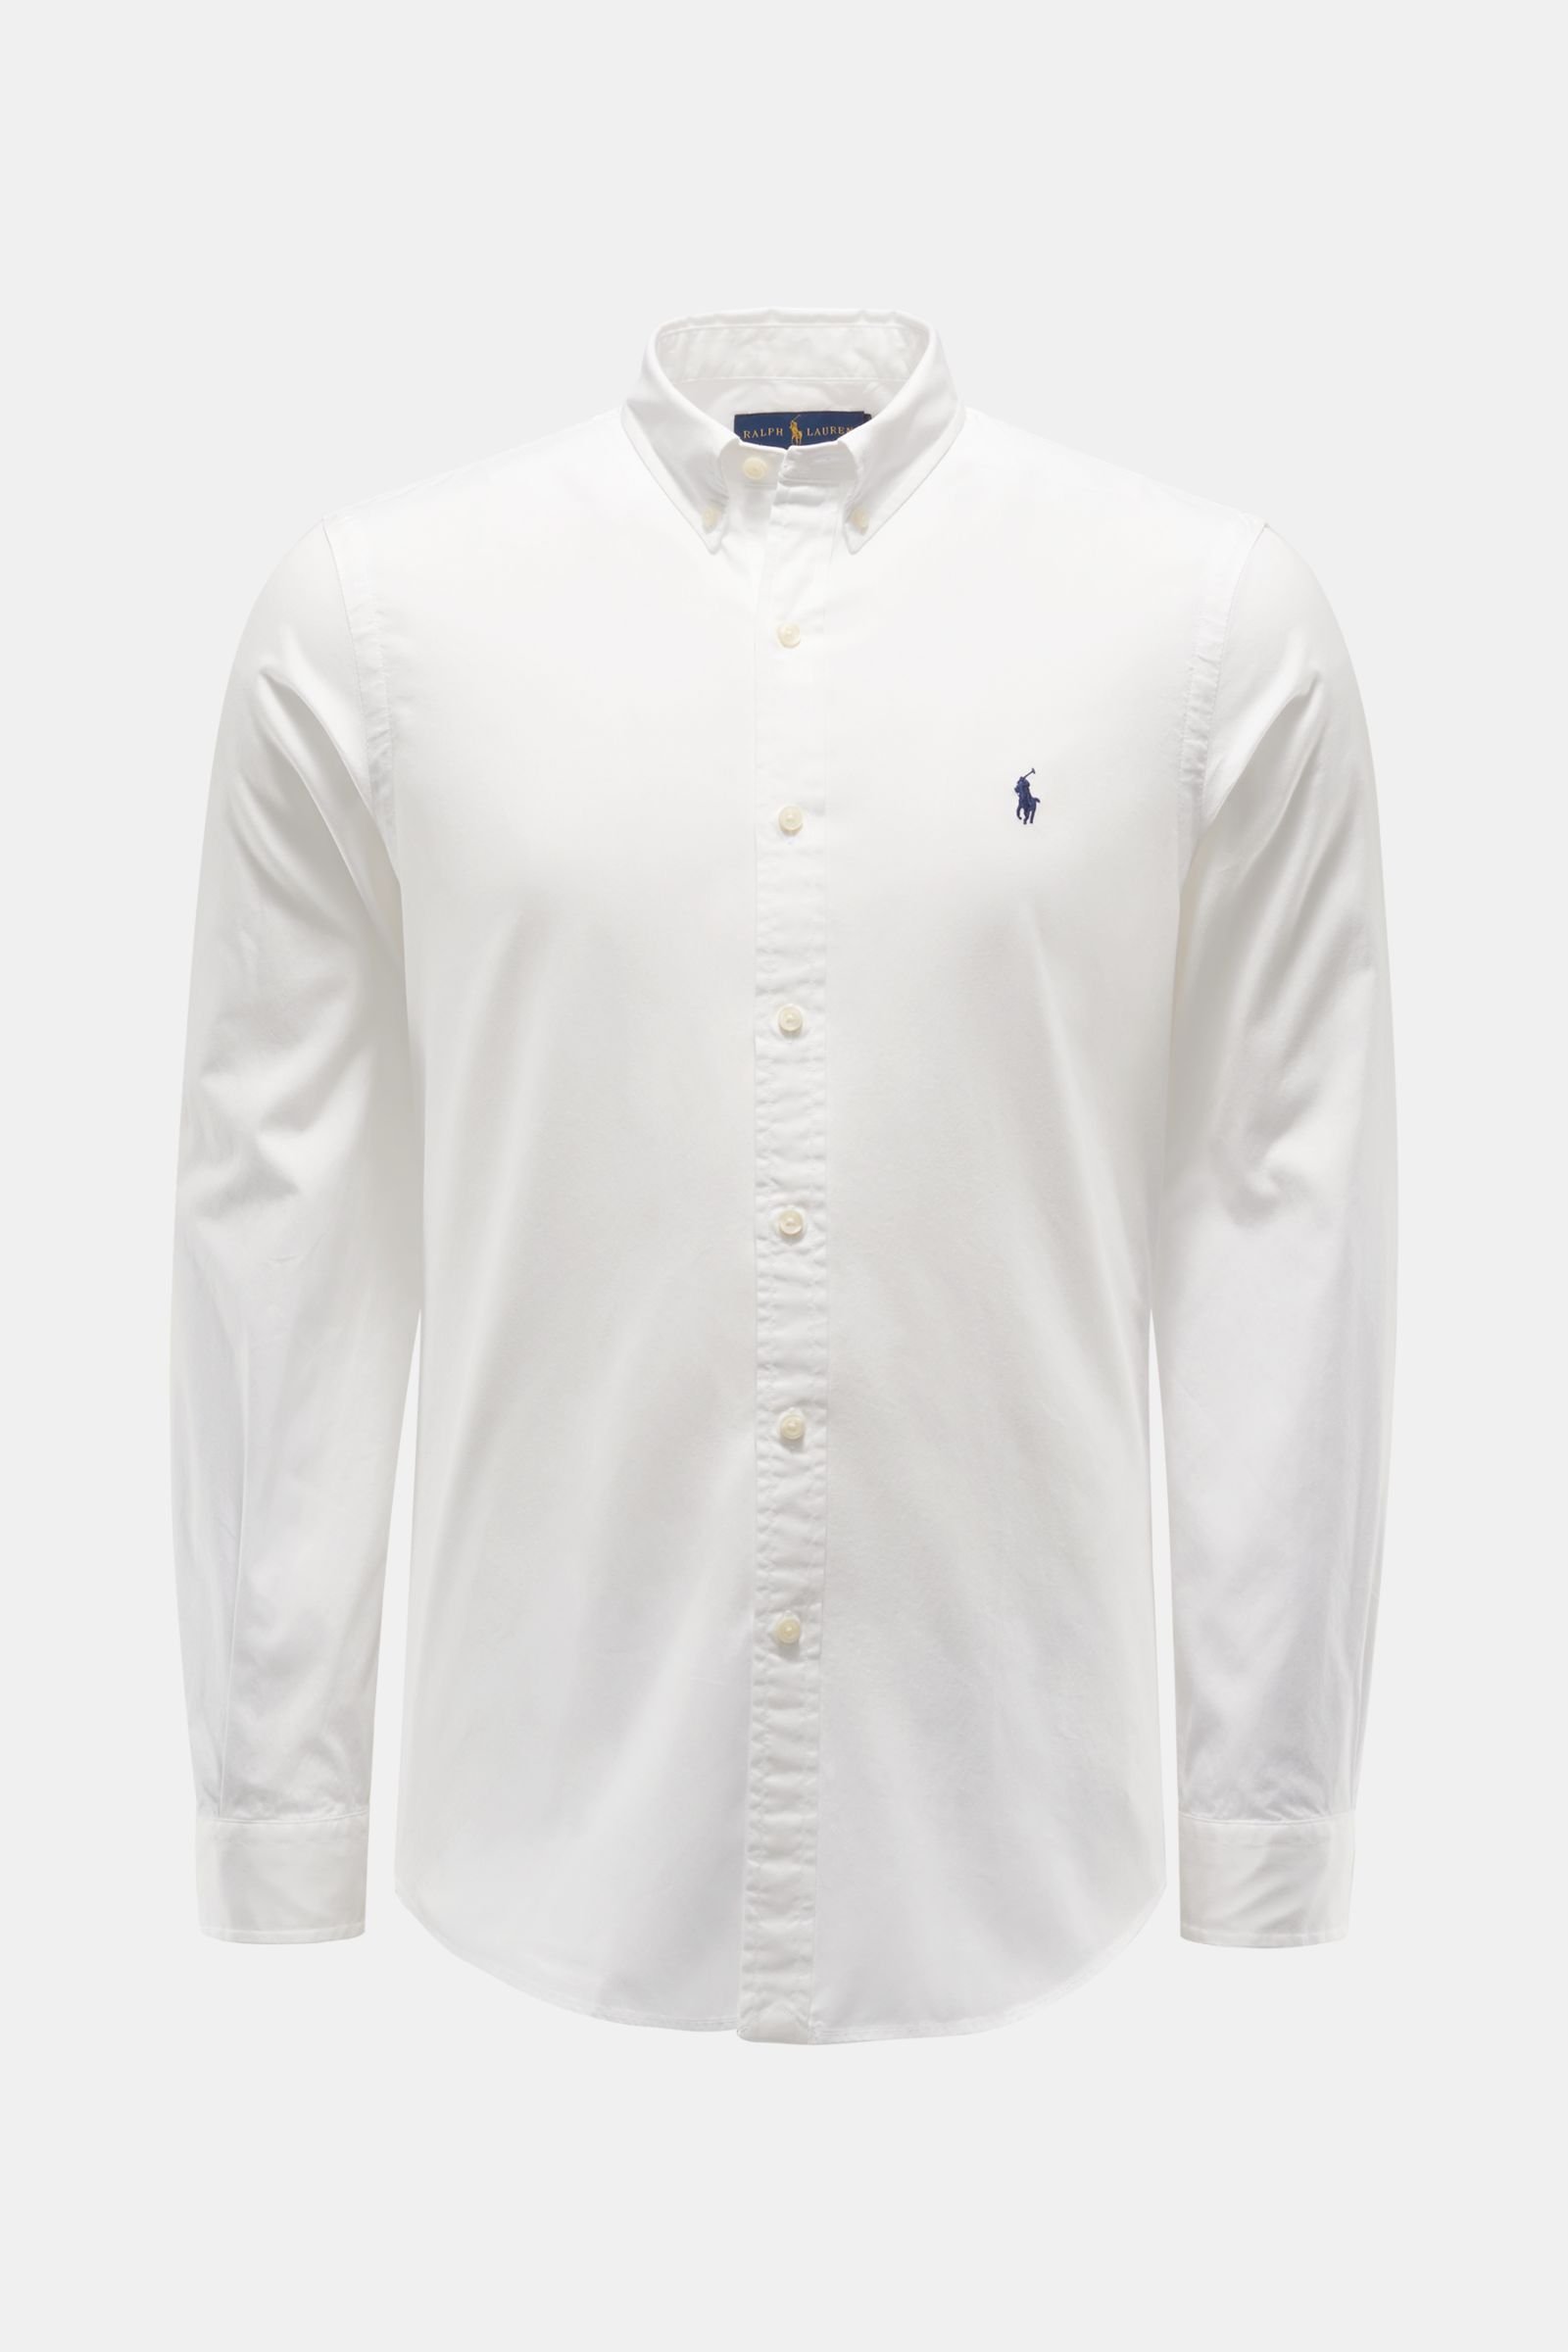 white ralph lauren polo shirt button down